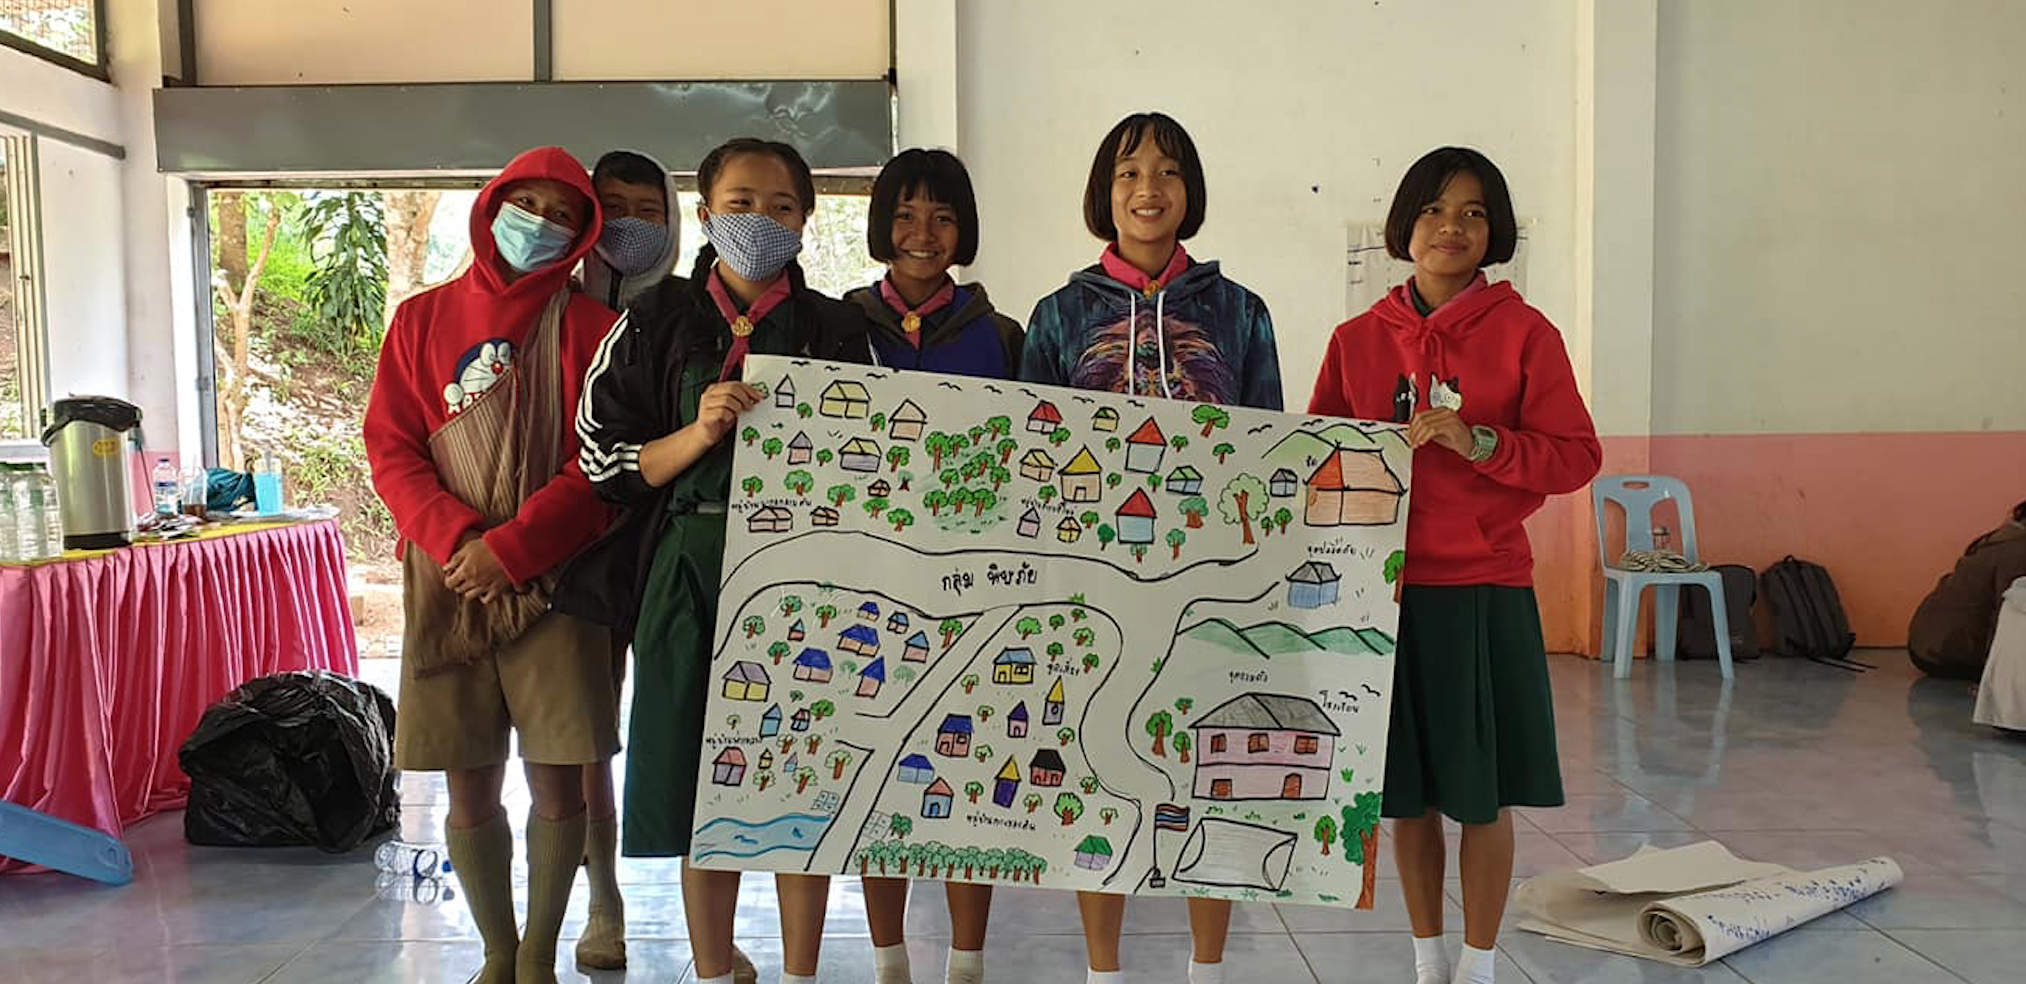 Группа в Таиланде держит плакат с разработанным ими планом действий на случай стихийных бедствий.